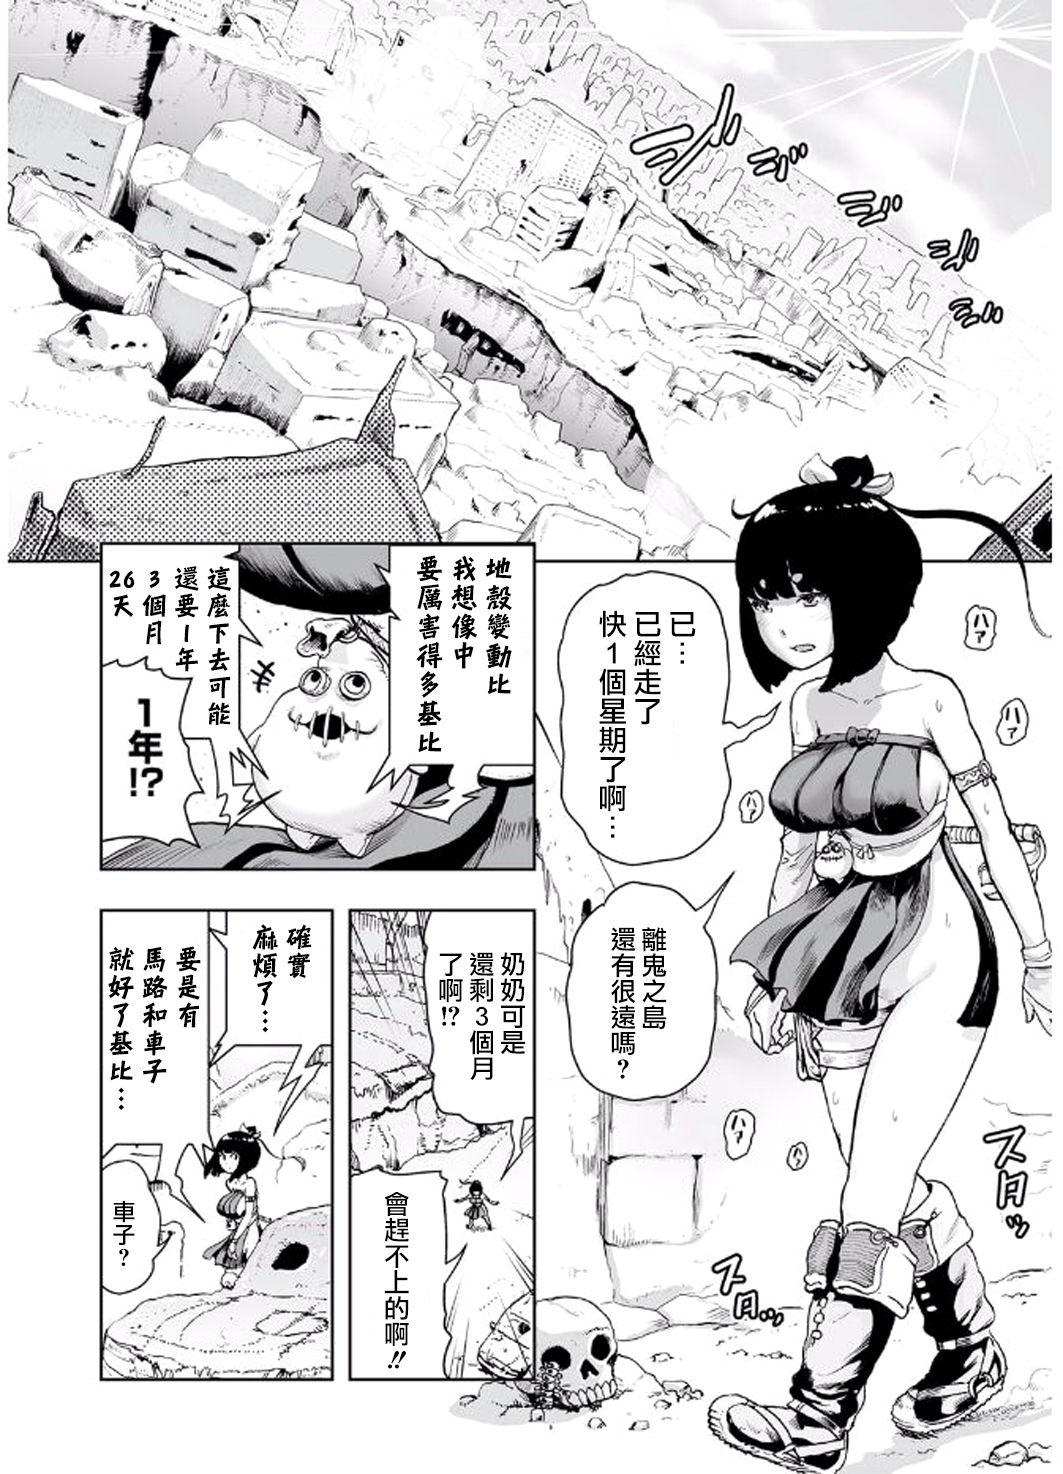 Puto MOMO! Daisanwa Jetta City no Dokudenpa Oni no Maki Hd Porn - Page 2